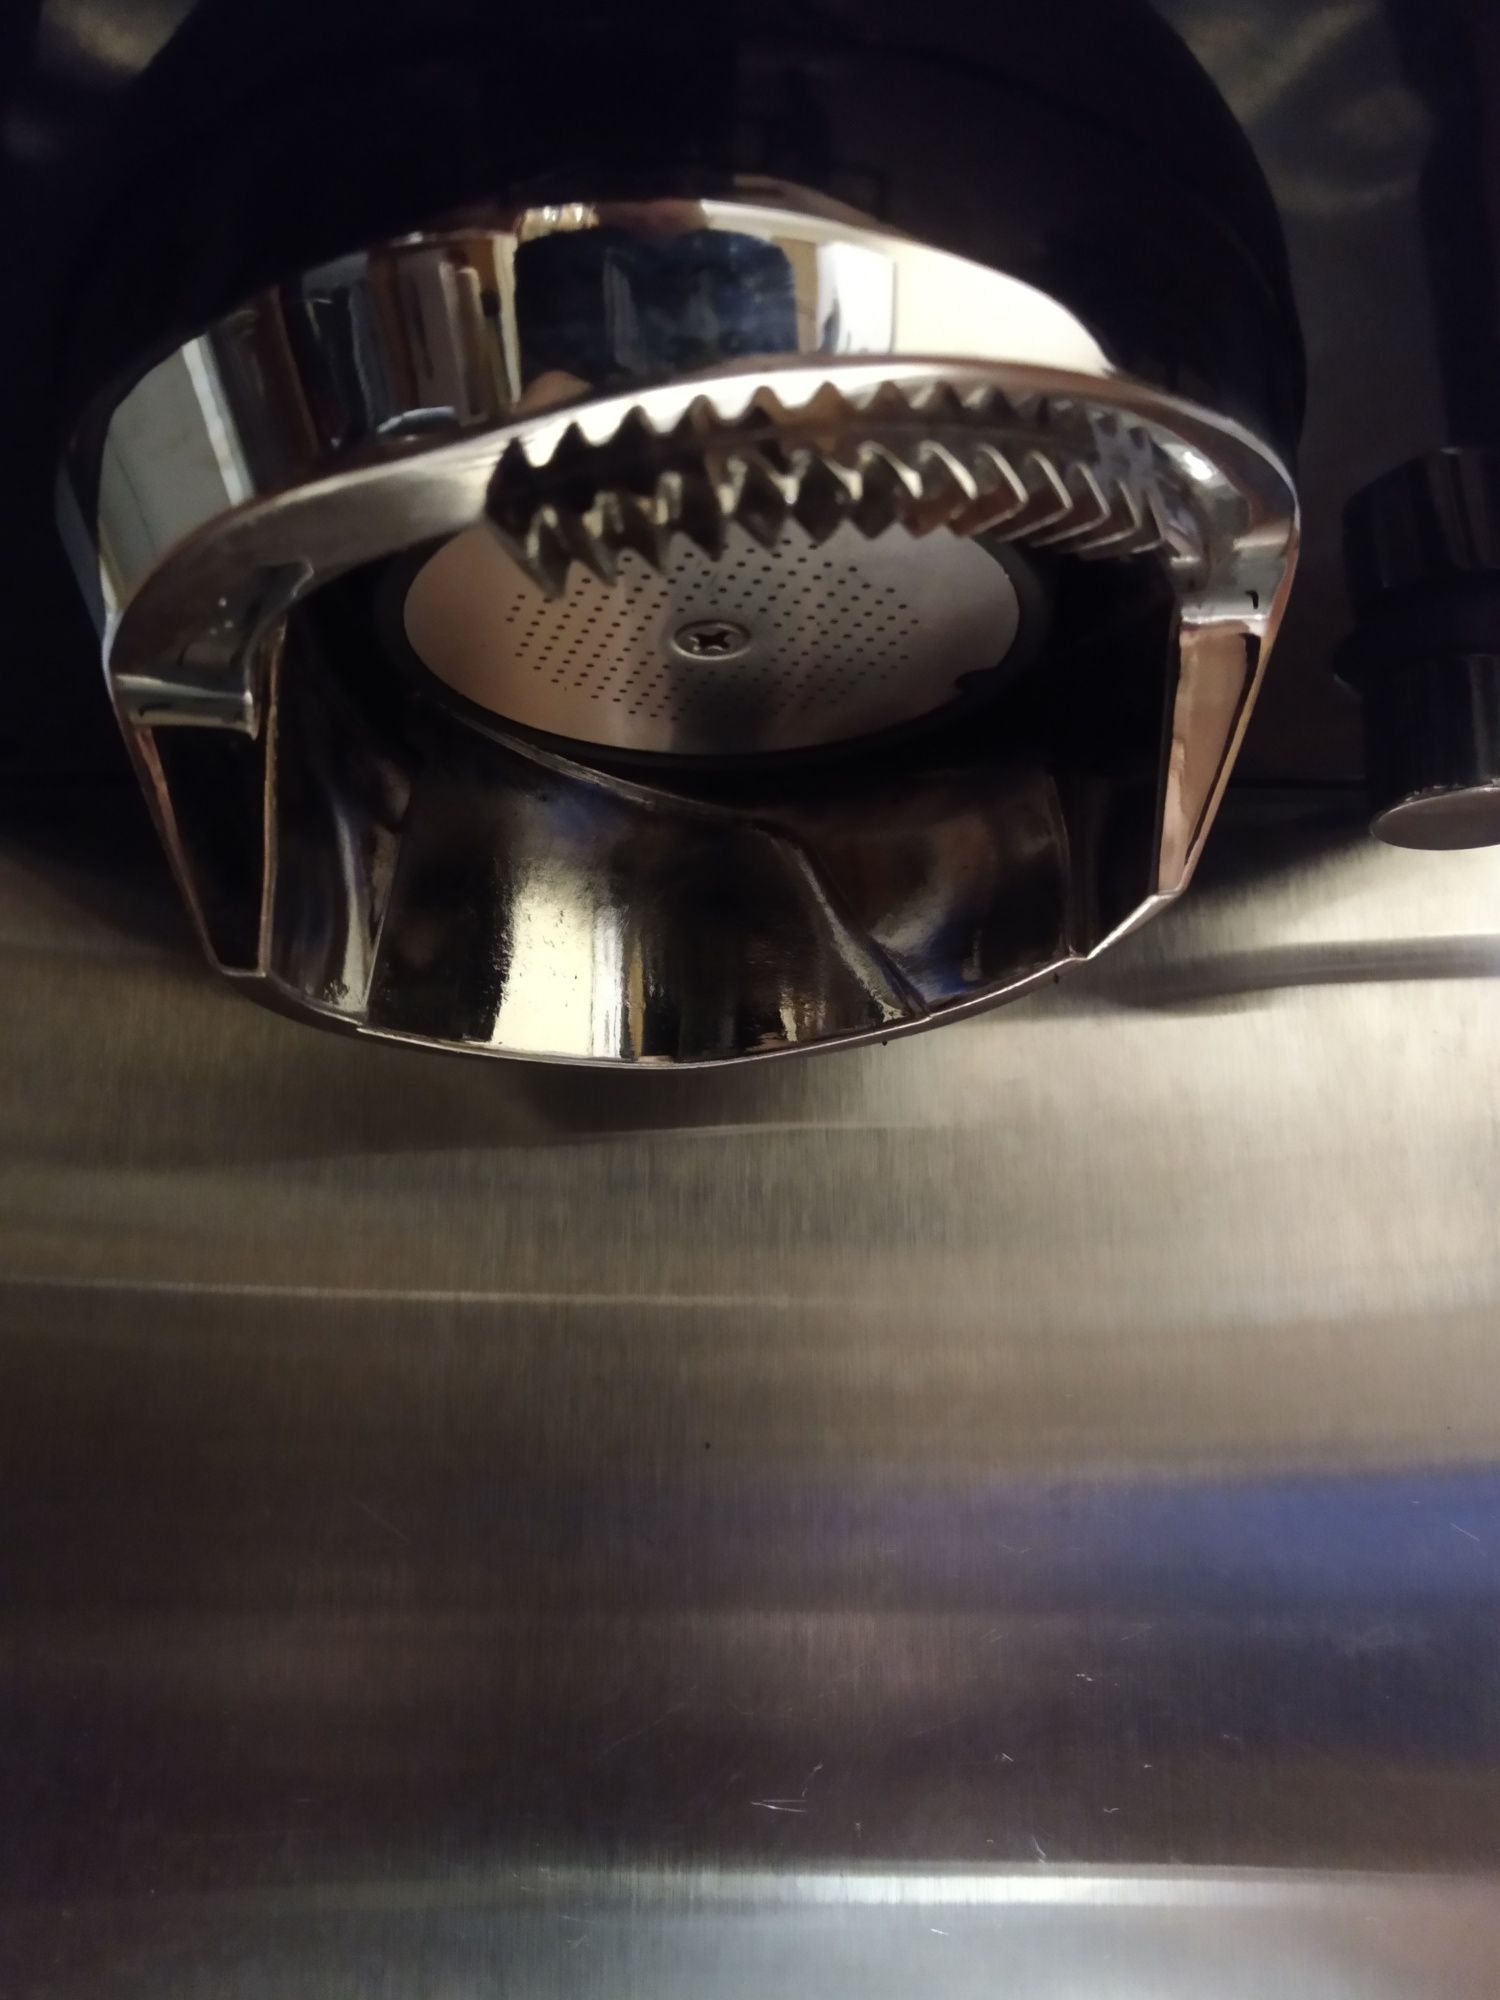 Кофеварка рожковая эспрессо Krups XP 5240